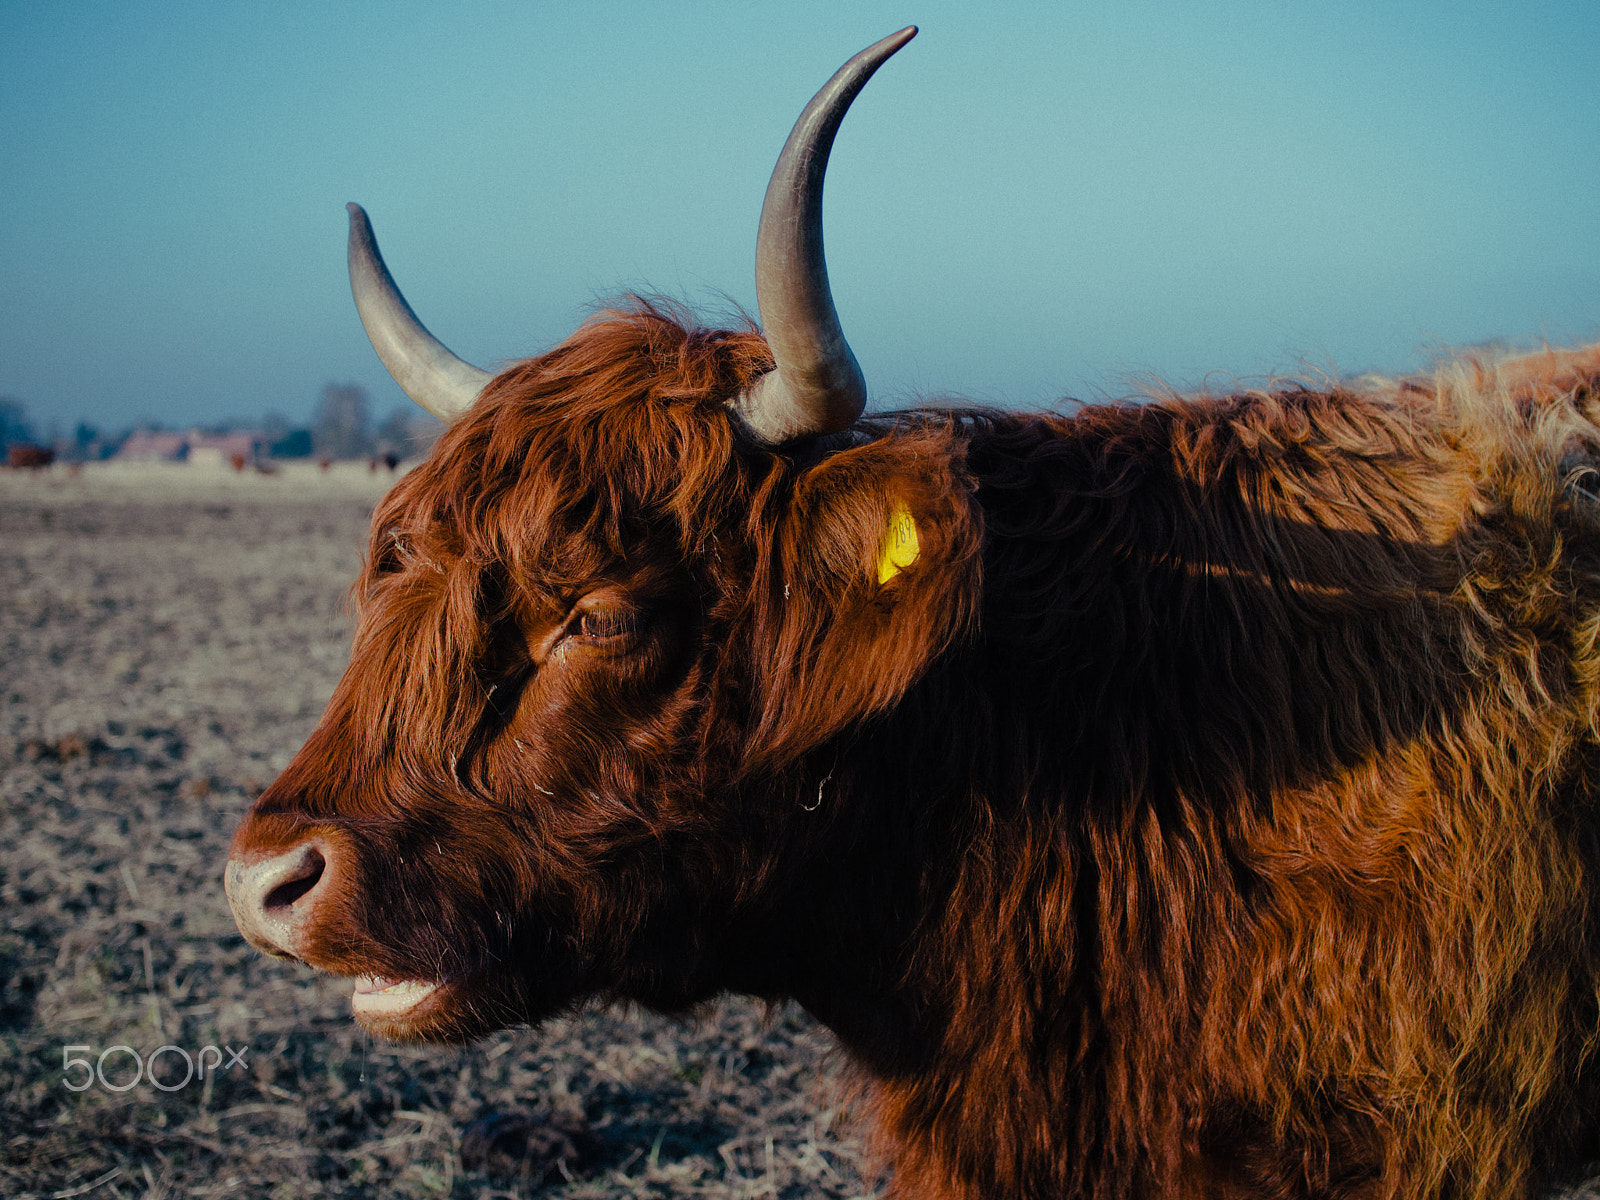 Panasonic Lumix DMC-G2 sample photo. Highland cattle iv photography